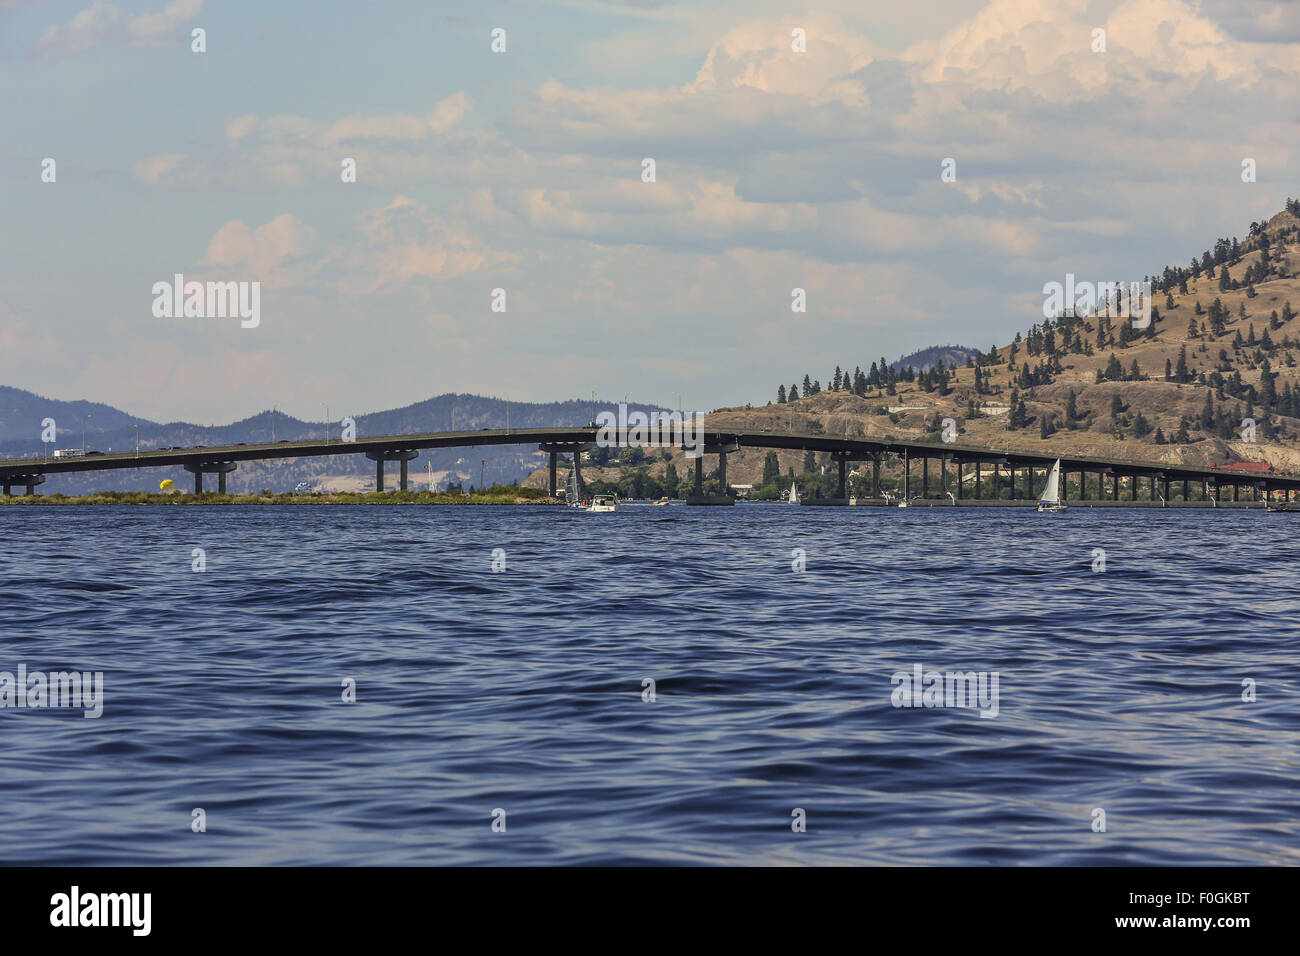 William R. Bennett Pont sur le lac Okanagan à Kelowna, Canada prises à partir de la voile sur le lac. Banque D'Images